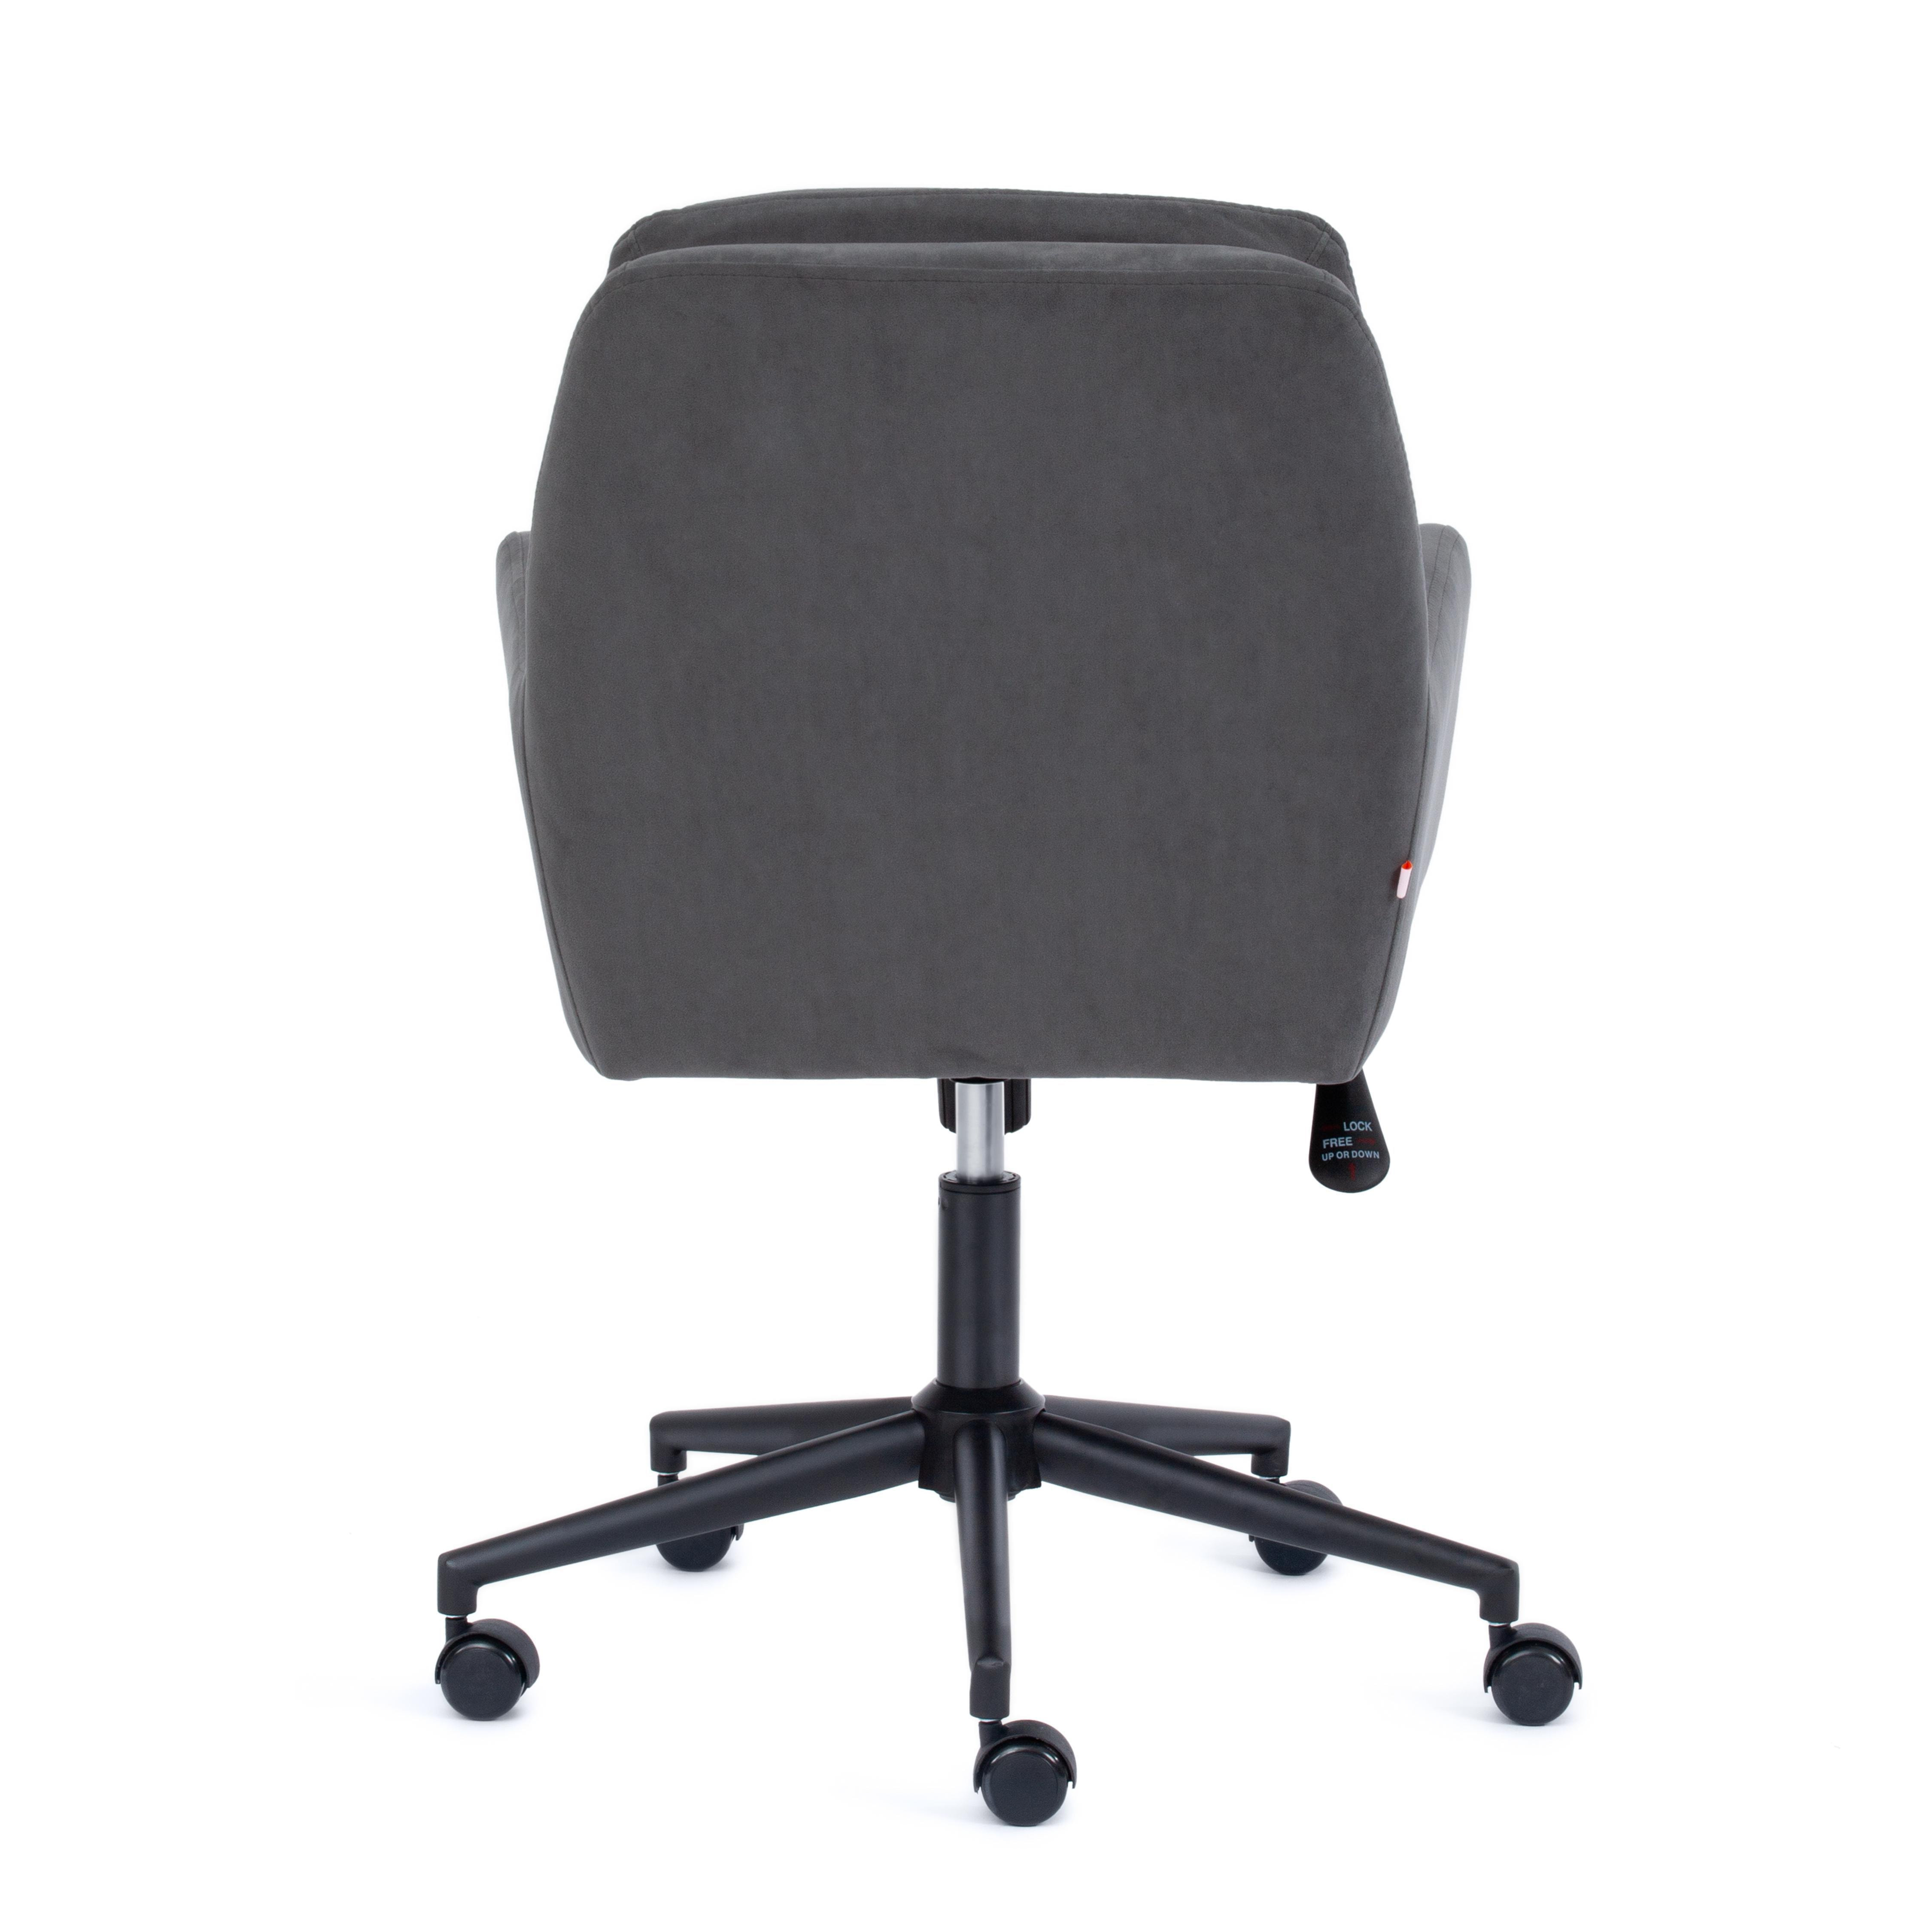 Кресло GARDA флок , серый, 29